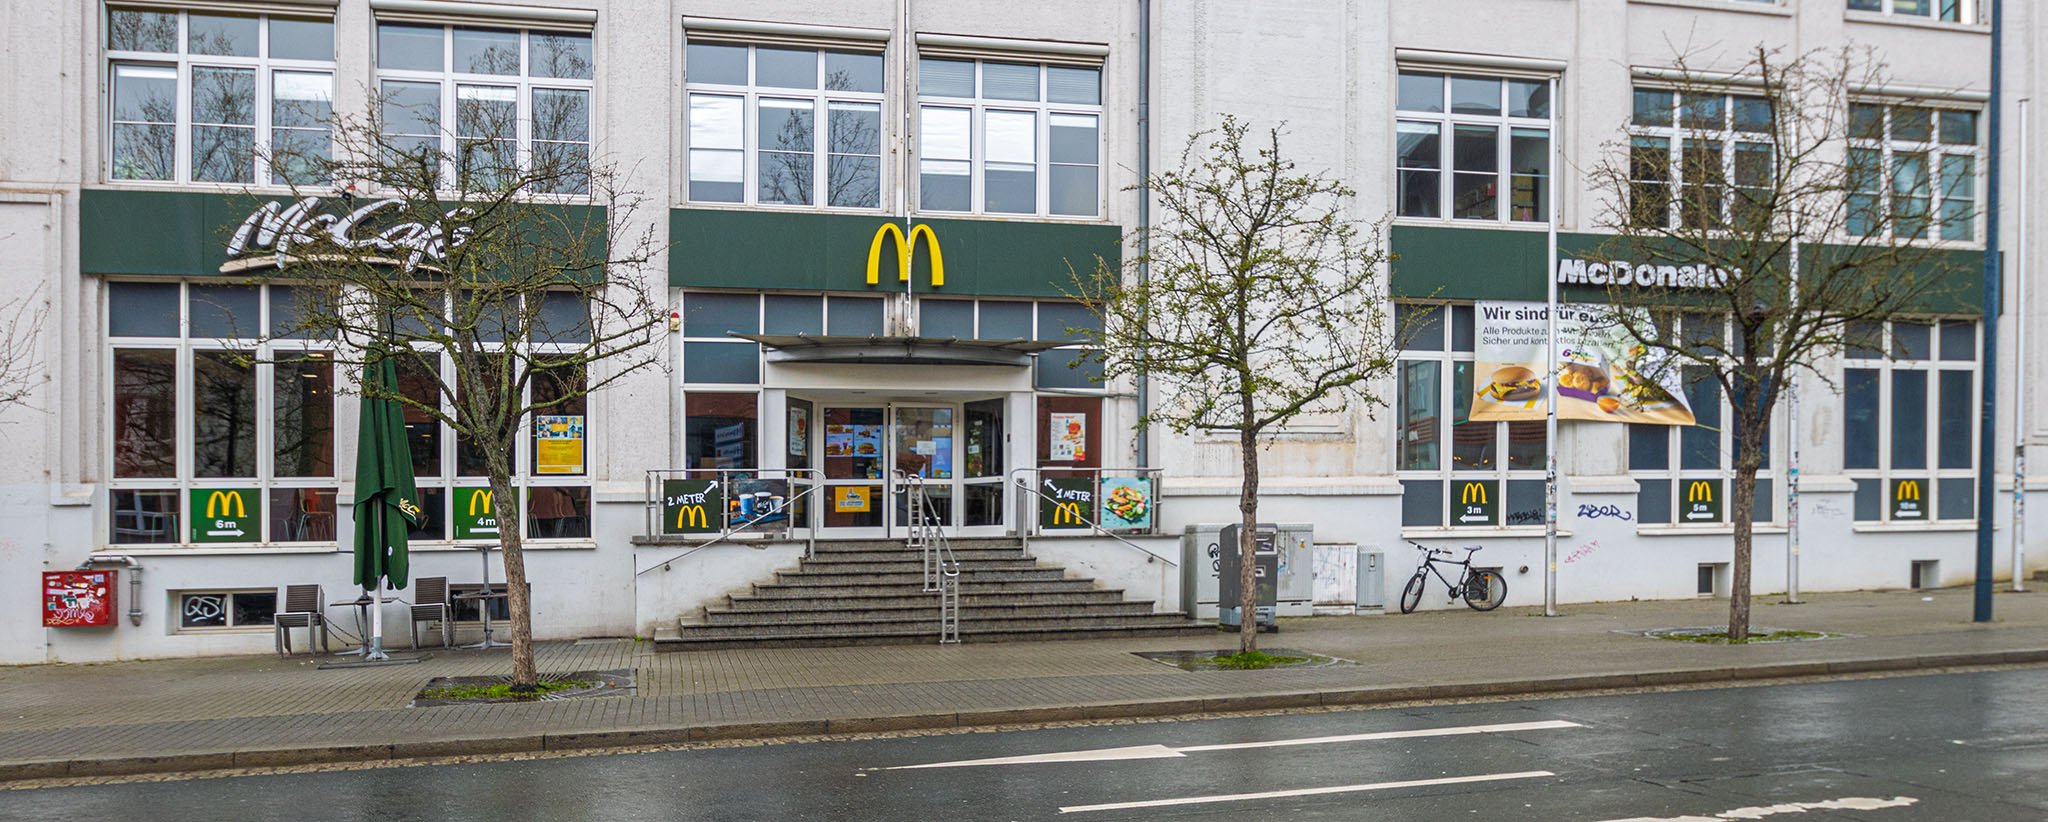 Das McDonald’s-Restaurant in Jena (Leutragraben)